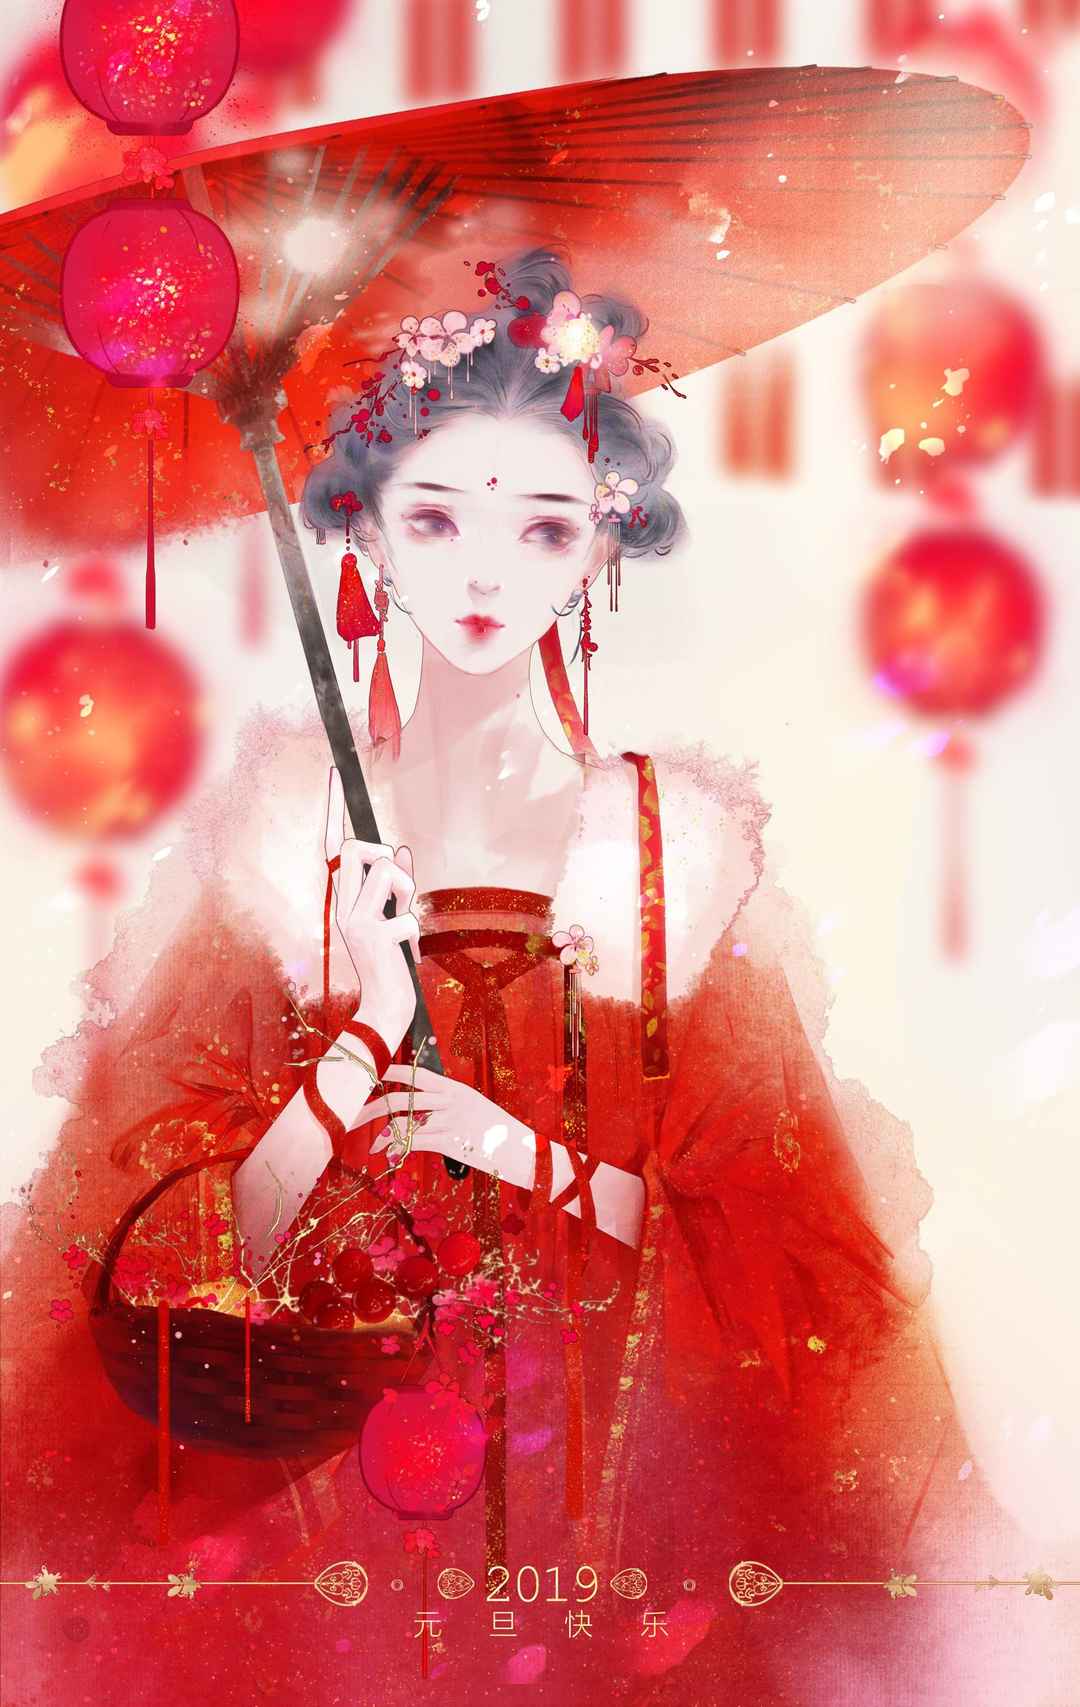 红红的中国风画风的动漫女孩手机壁纸看着就很吉利-